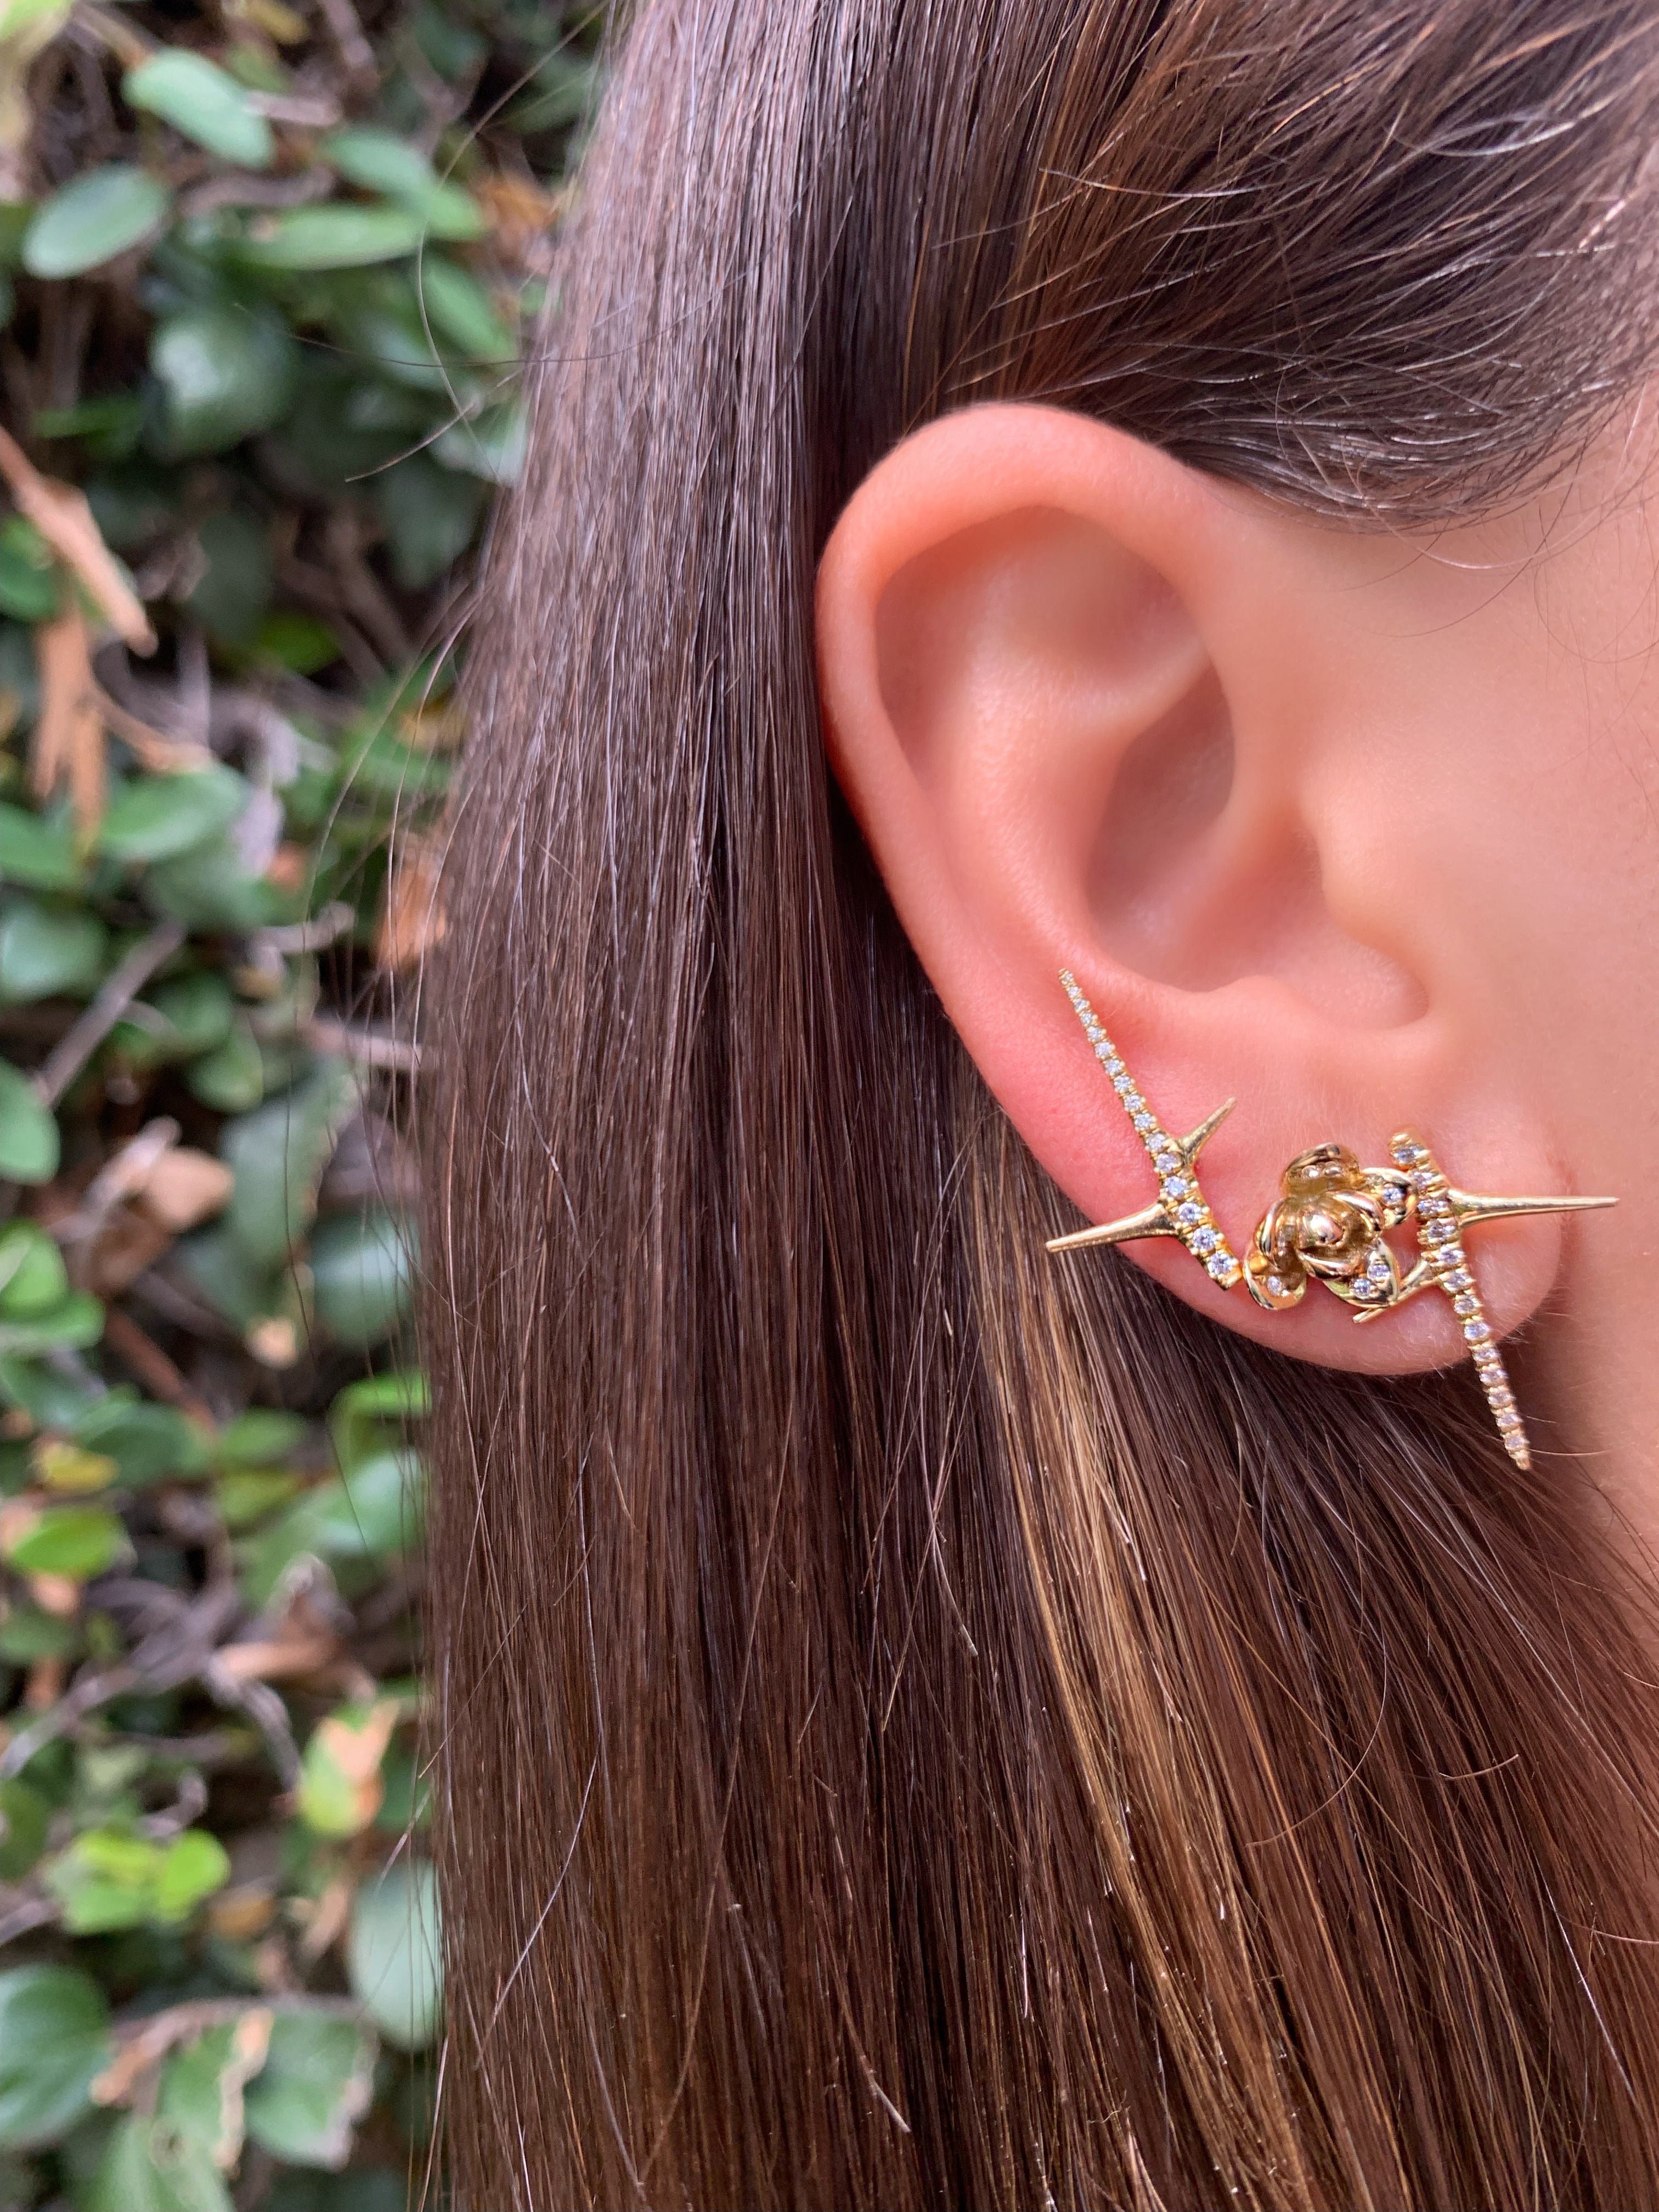 Blossom Earrings Stud Earrings Elisabeth Bell Jewelry   